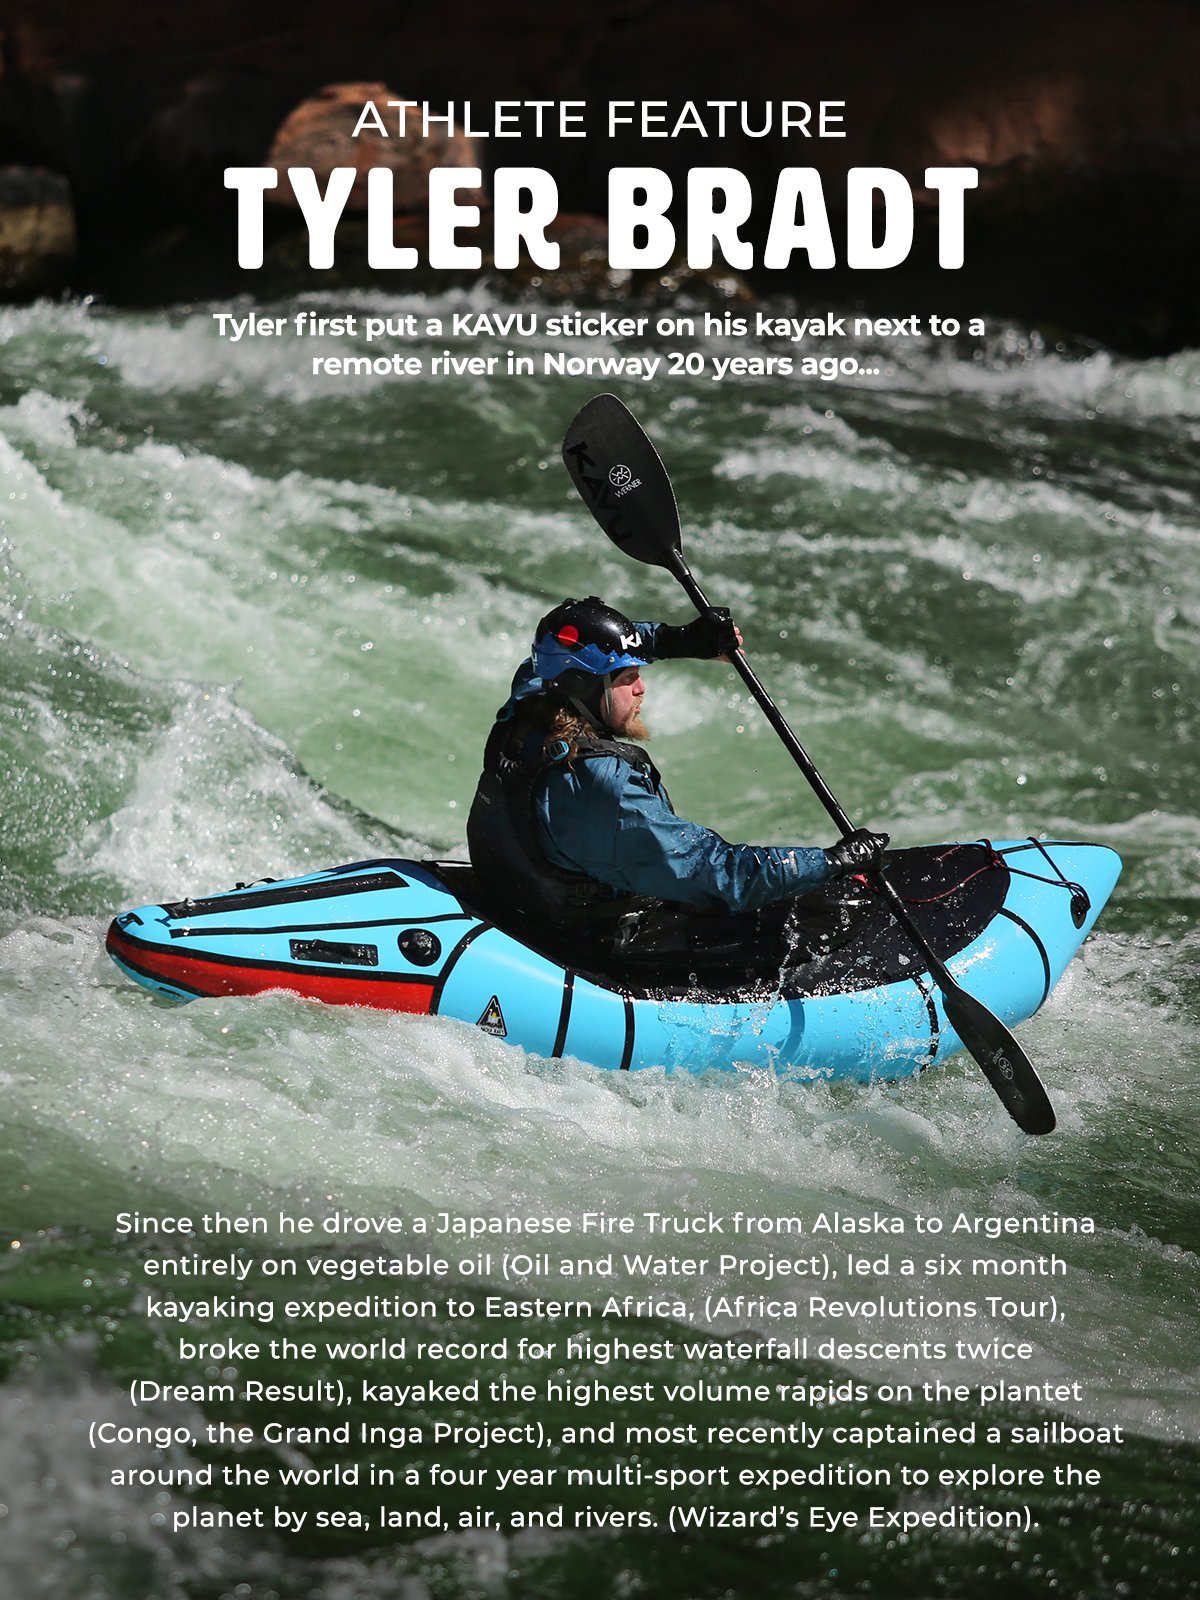 KAVU: Meet Tyler Bradt